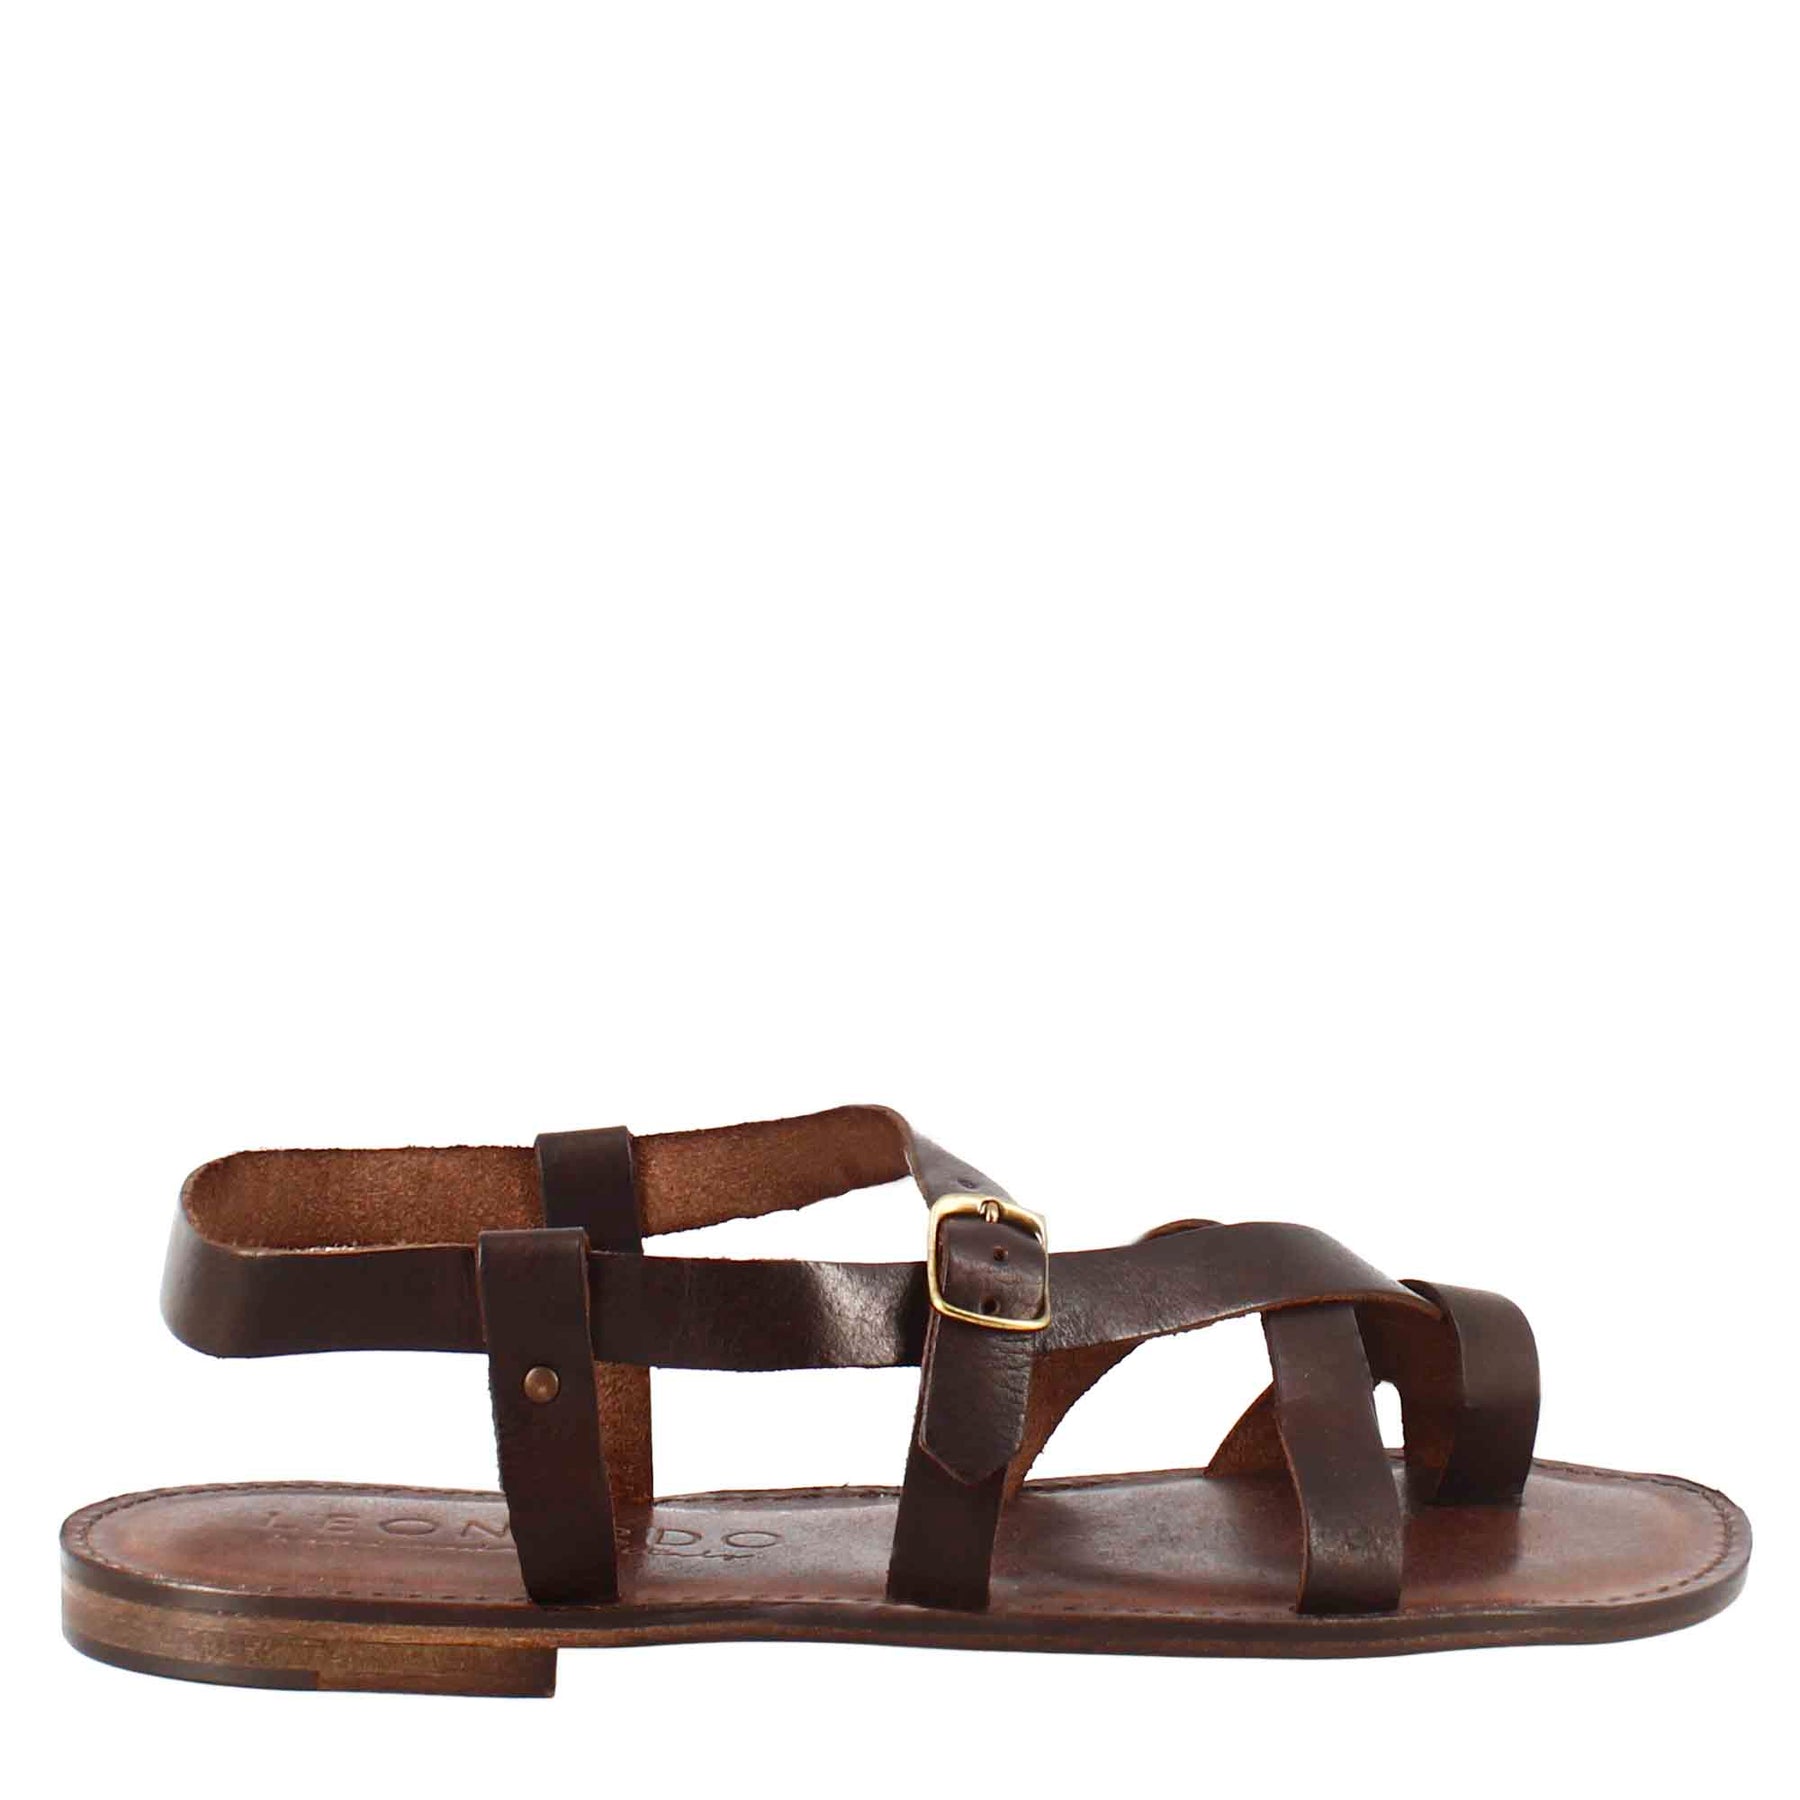 Sandales pour hommes modèle gladiateur Rimini en cuir marron